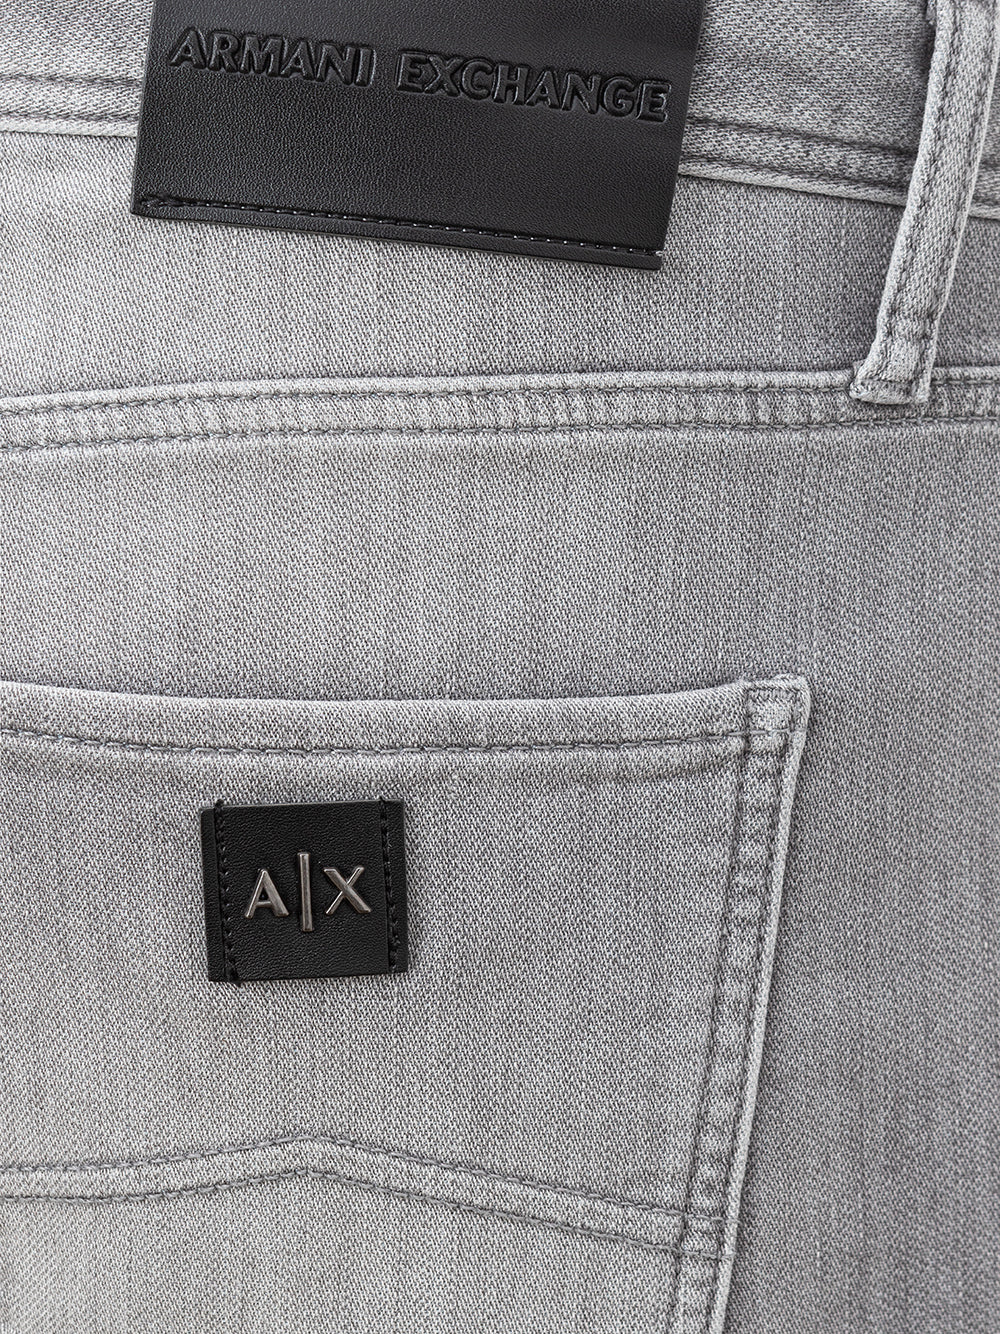 Armani Exchange jeans grises de cinco bolsillos